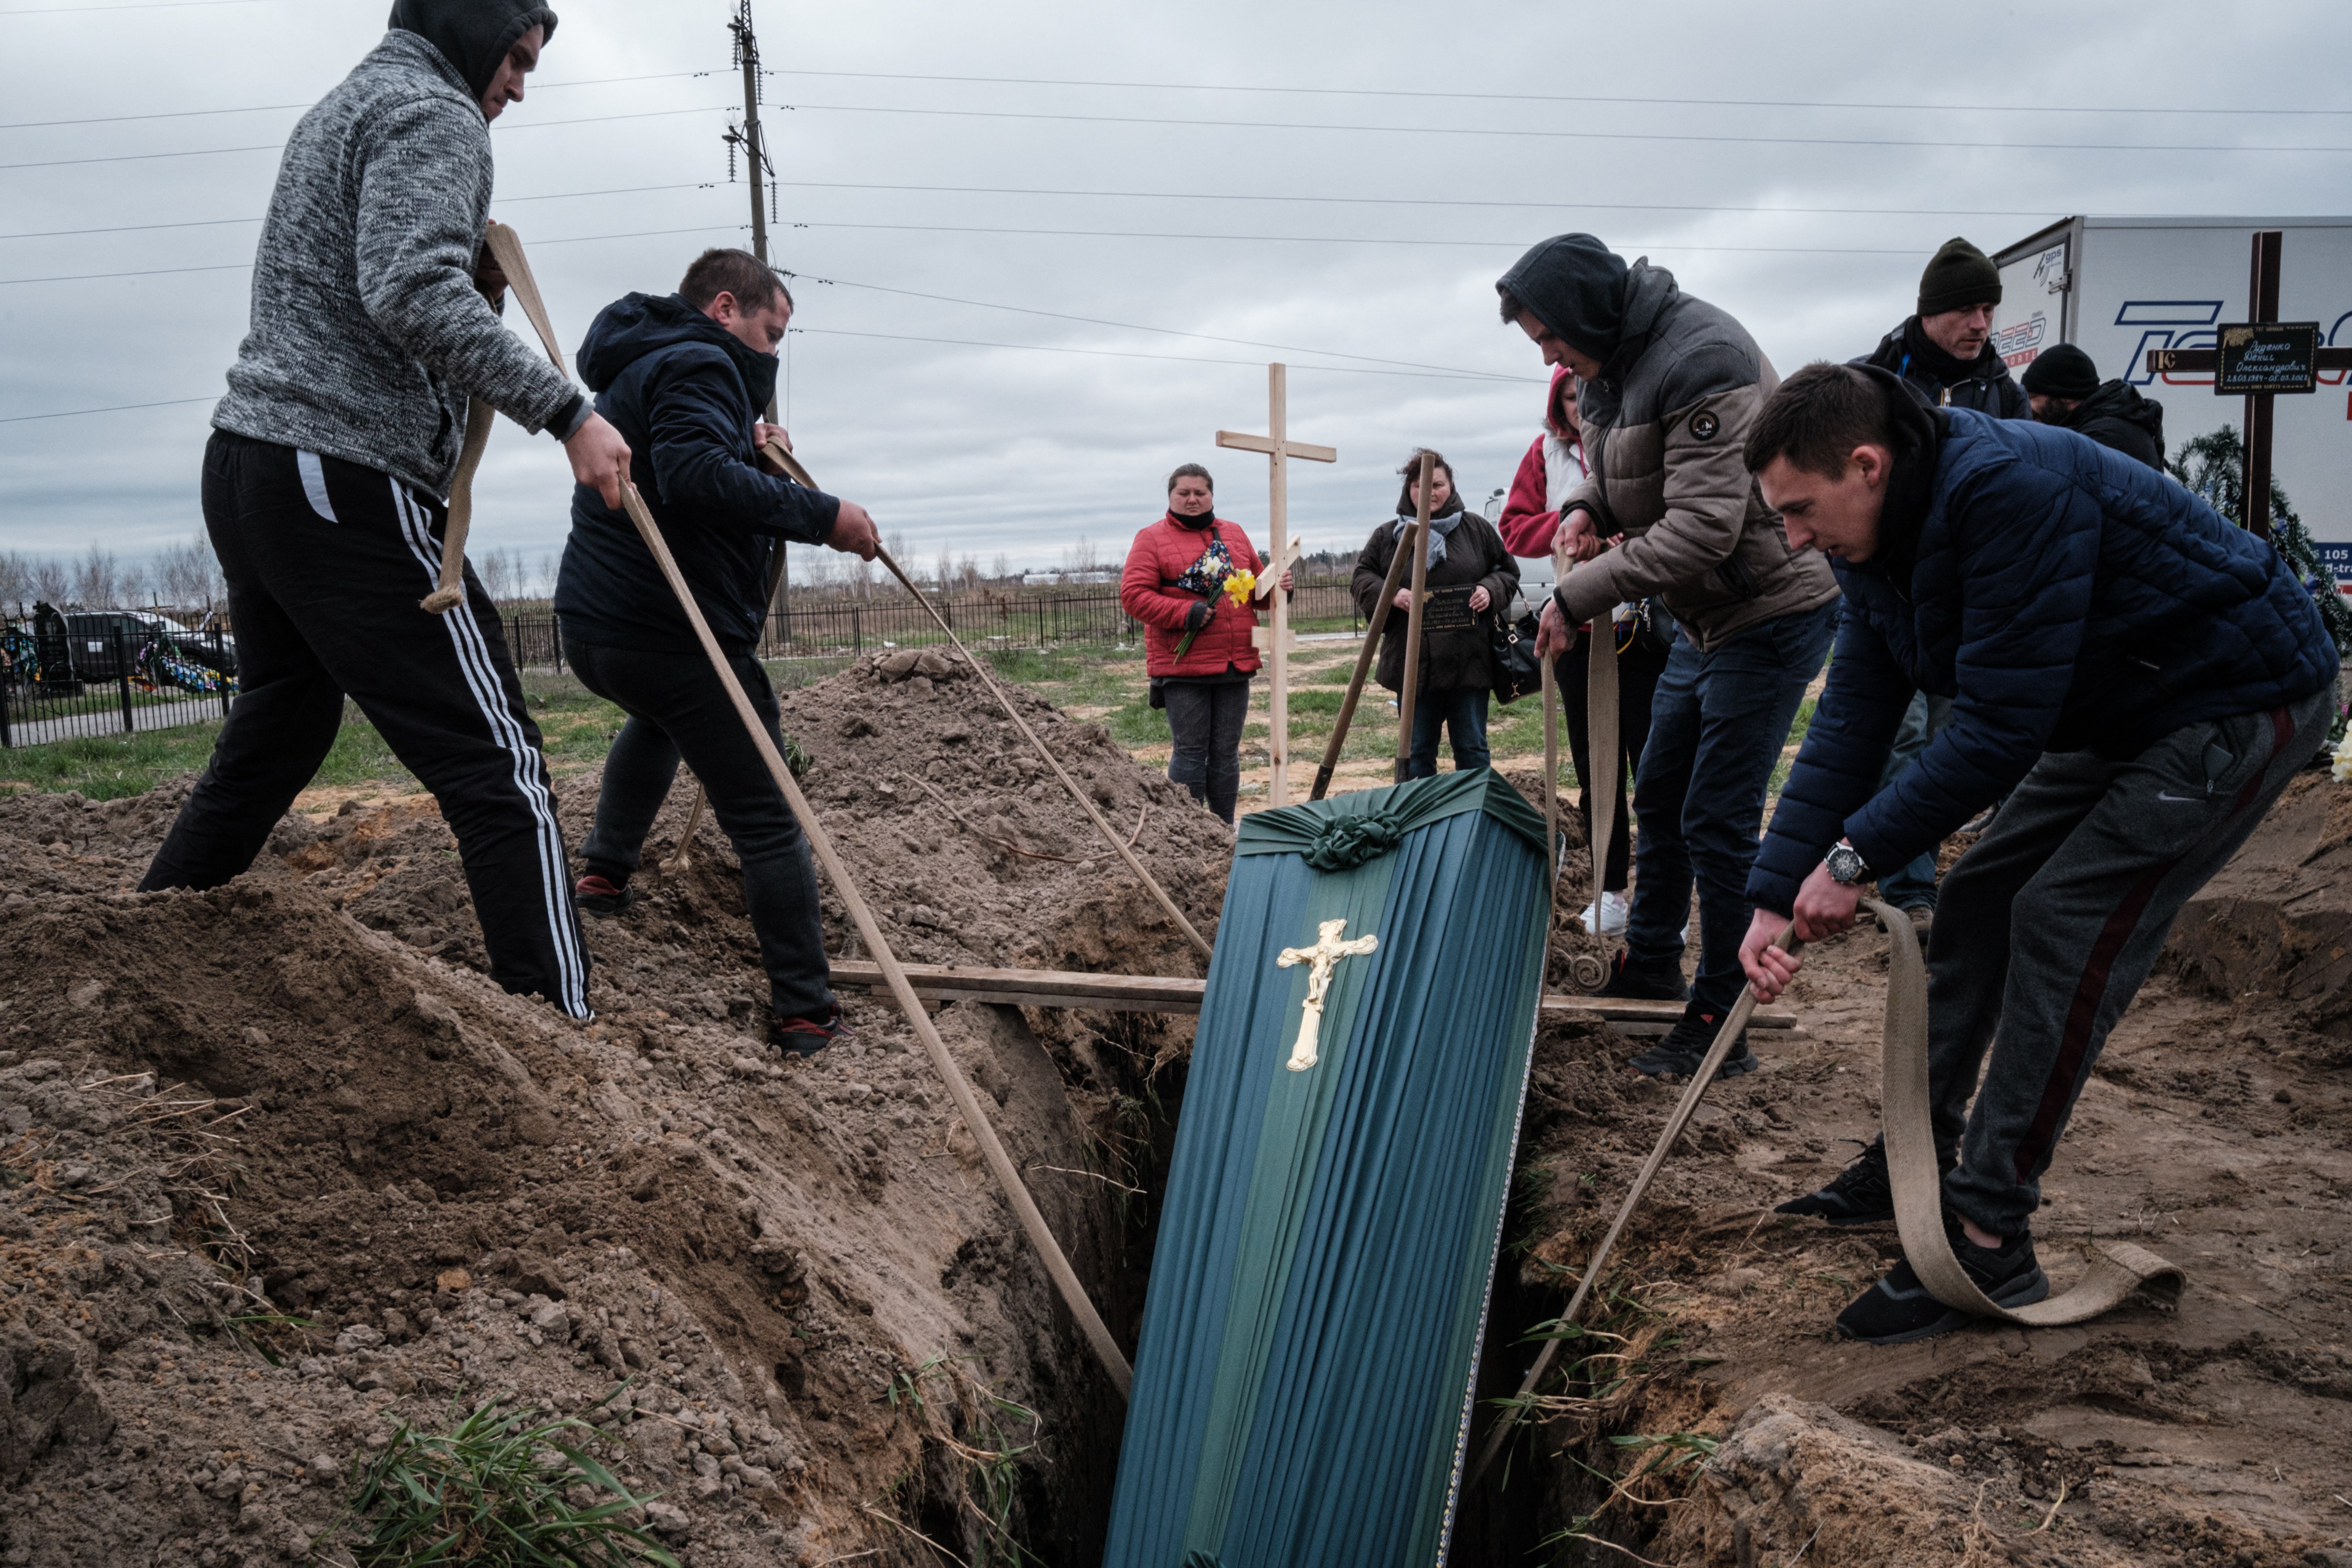 Eugene Czolij: Russia is committing genocide in Ukraine